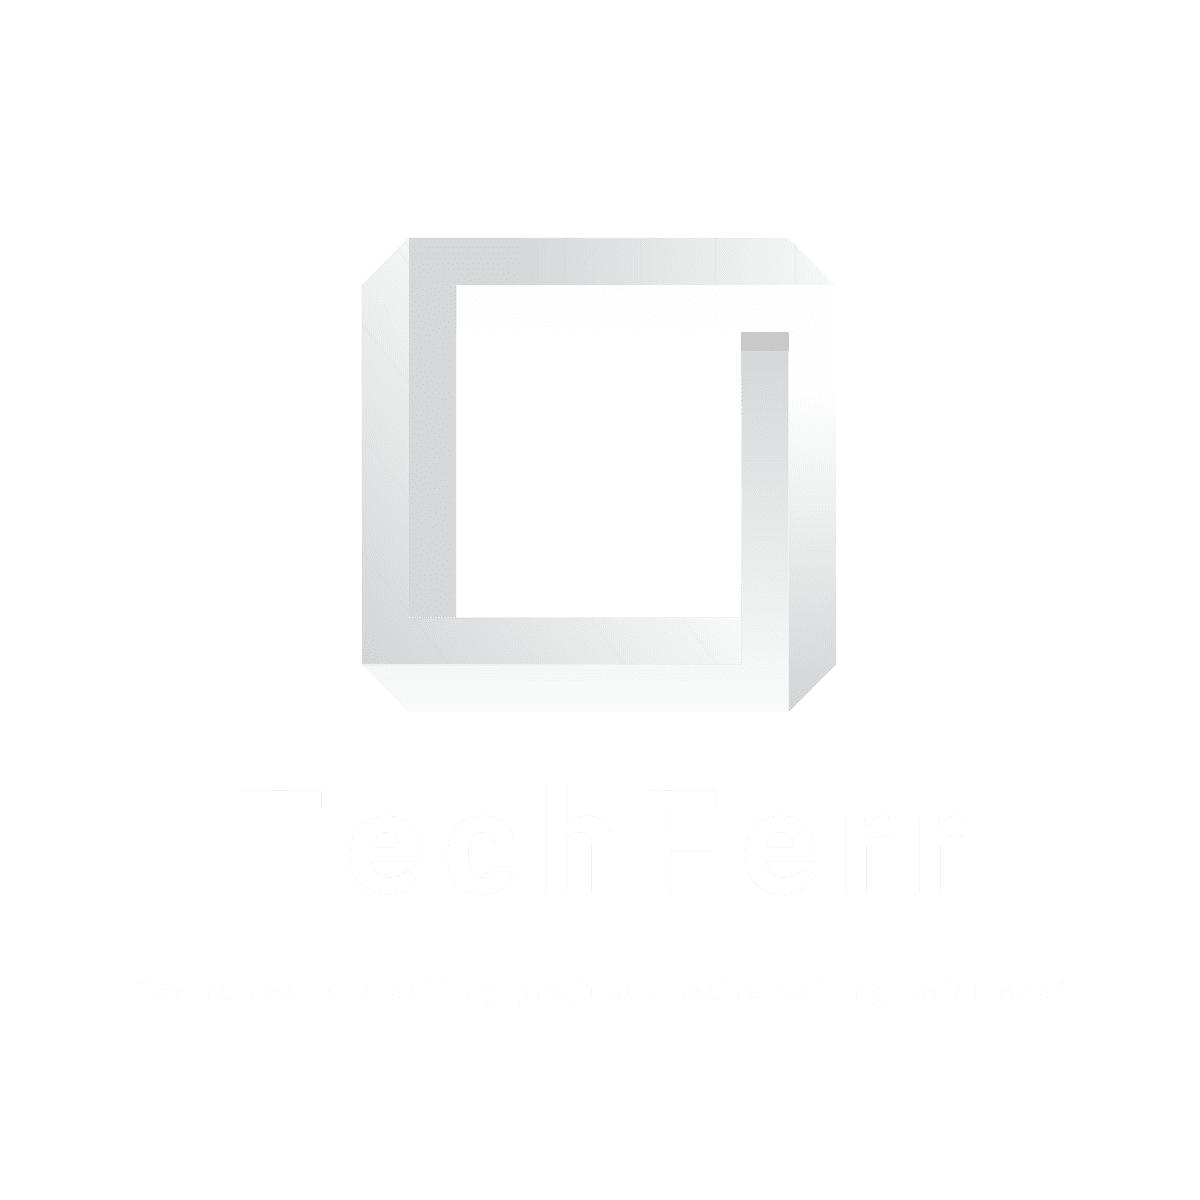 TechFerr